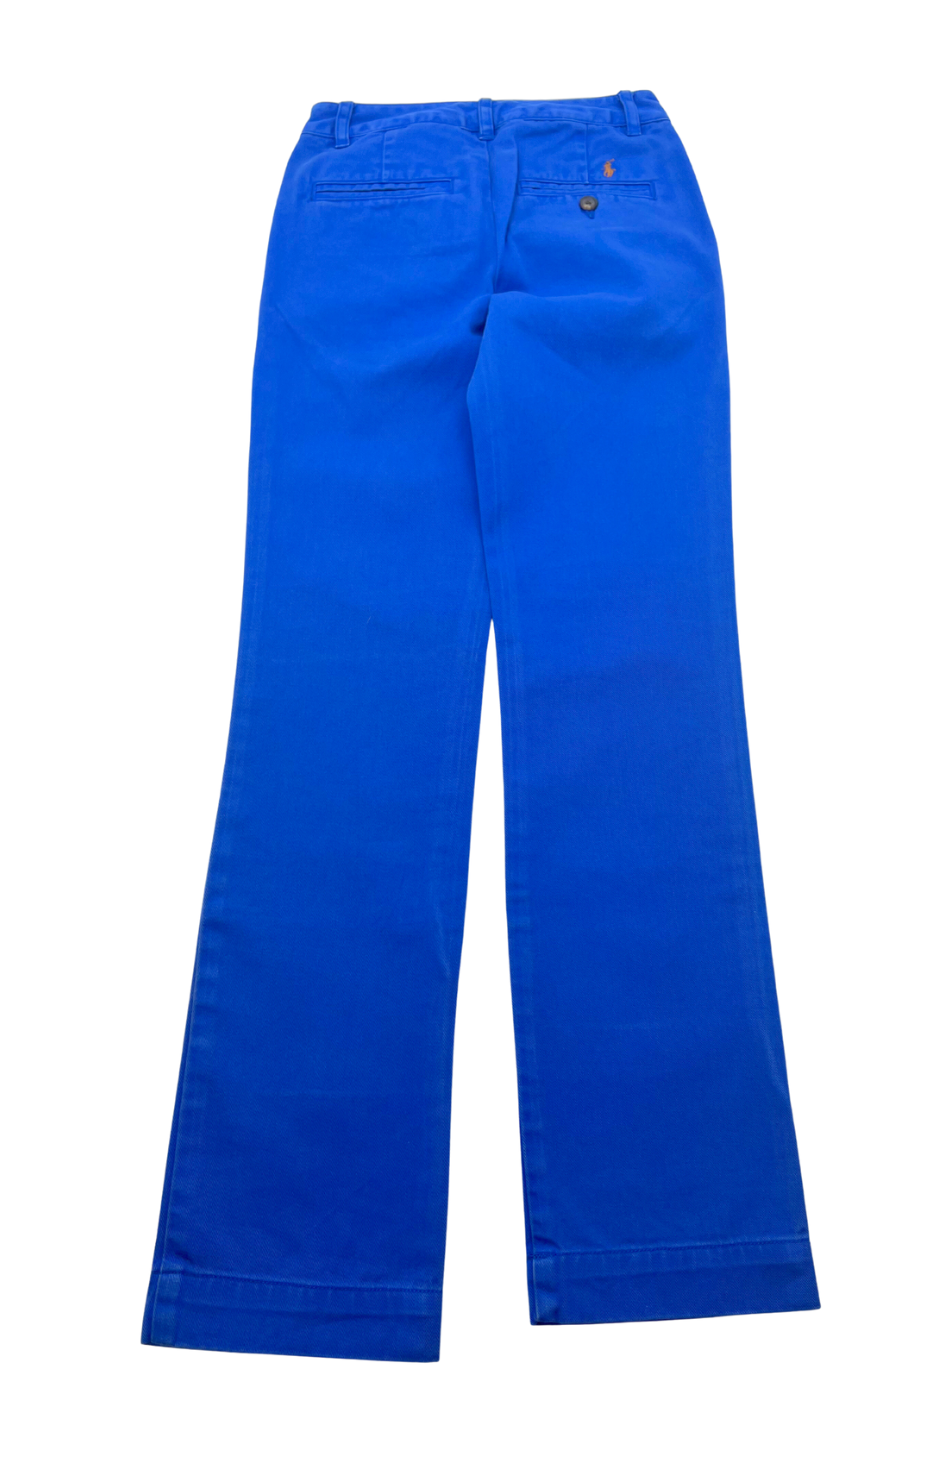 RALPH LAUREN - Pantalon bleu - 8 ans